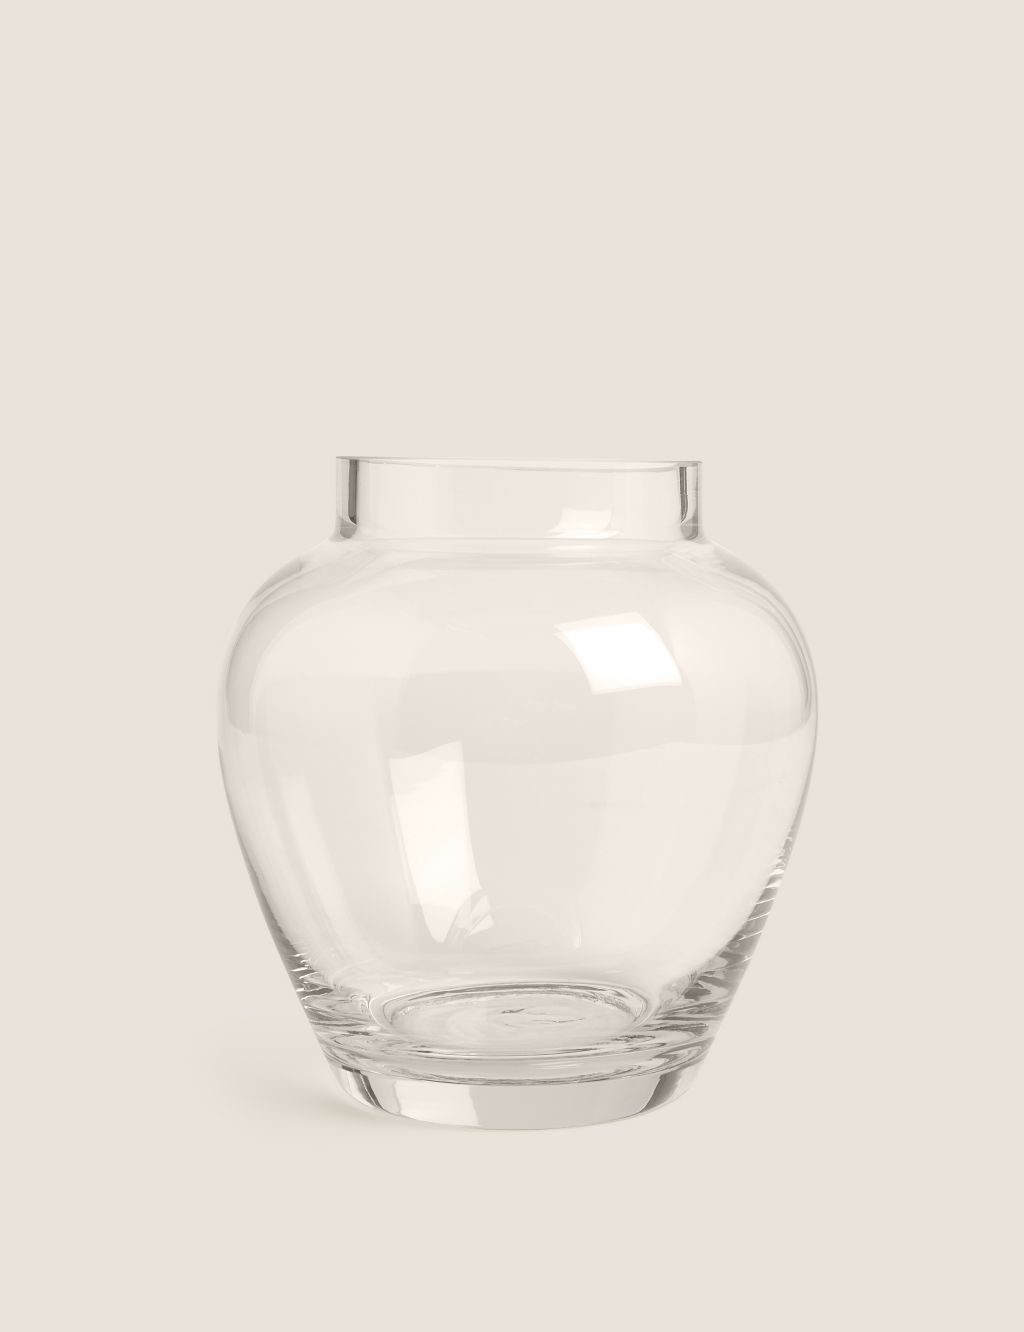 Medium Urn Vase image 1